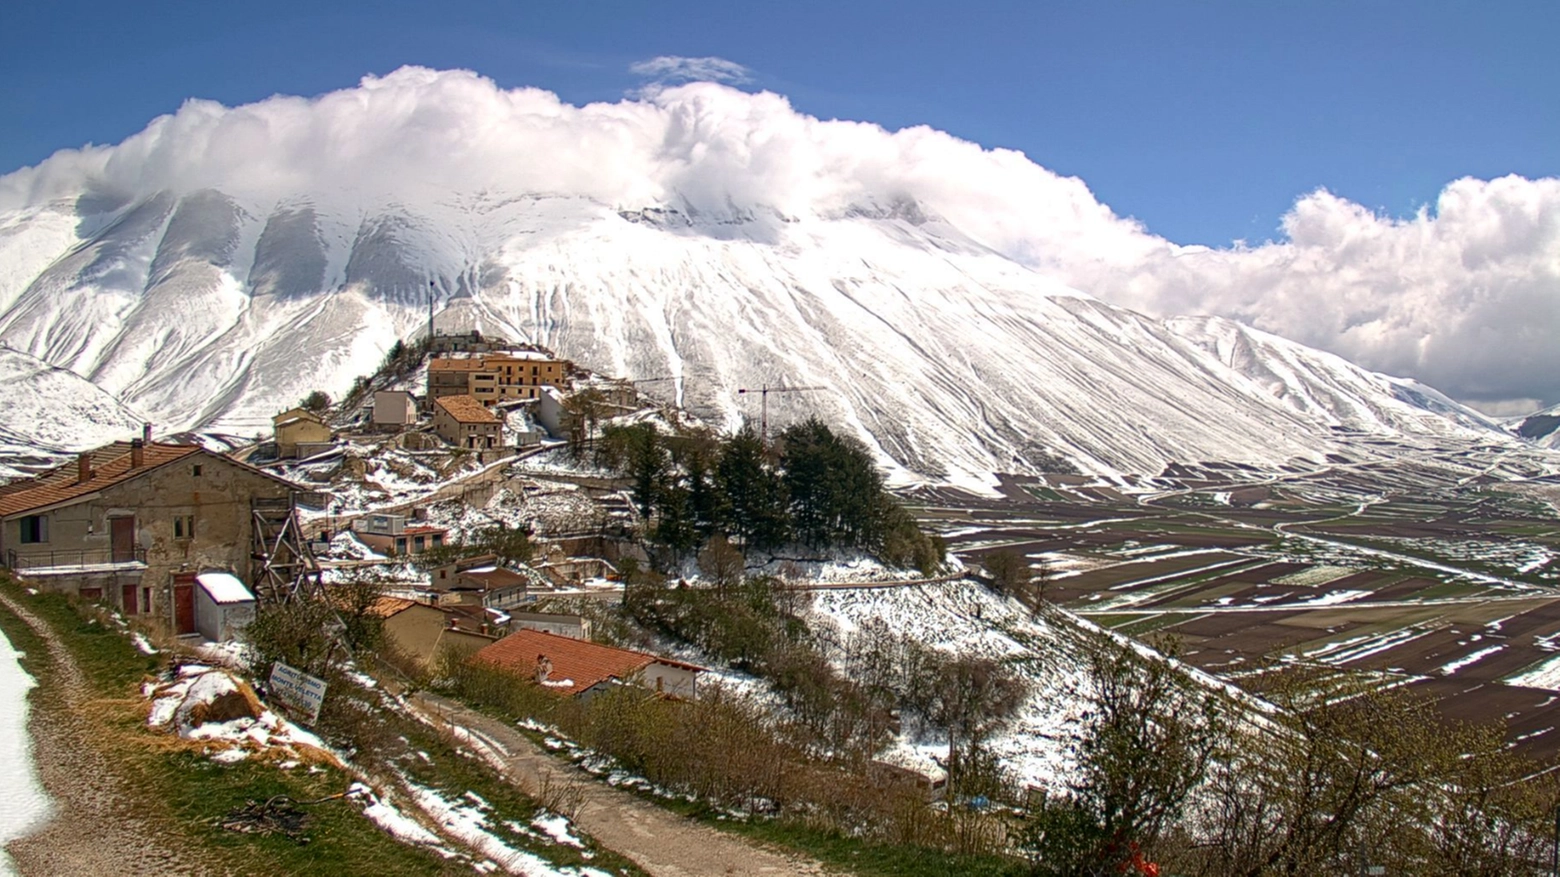 La neve sul monte Vettore, a Castelluccio registrati -6 gradi (Foto webcam scenaridigitali.com)